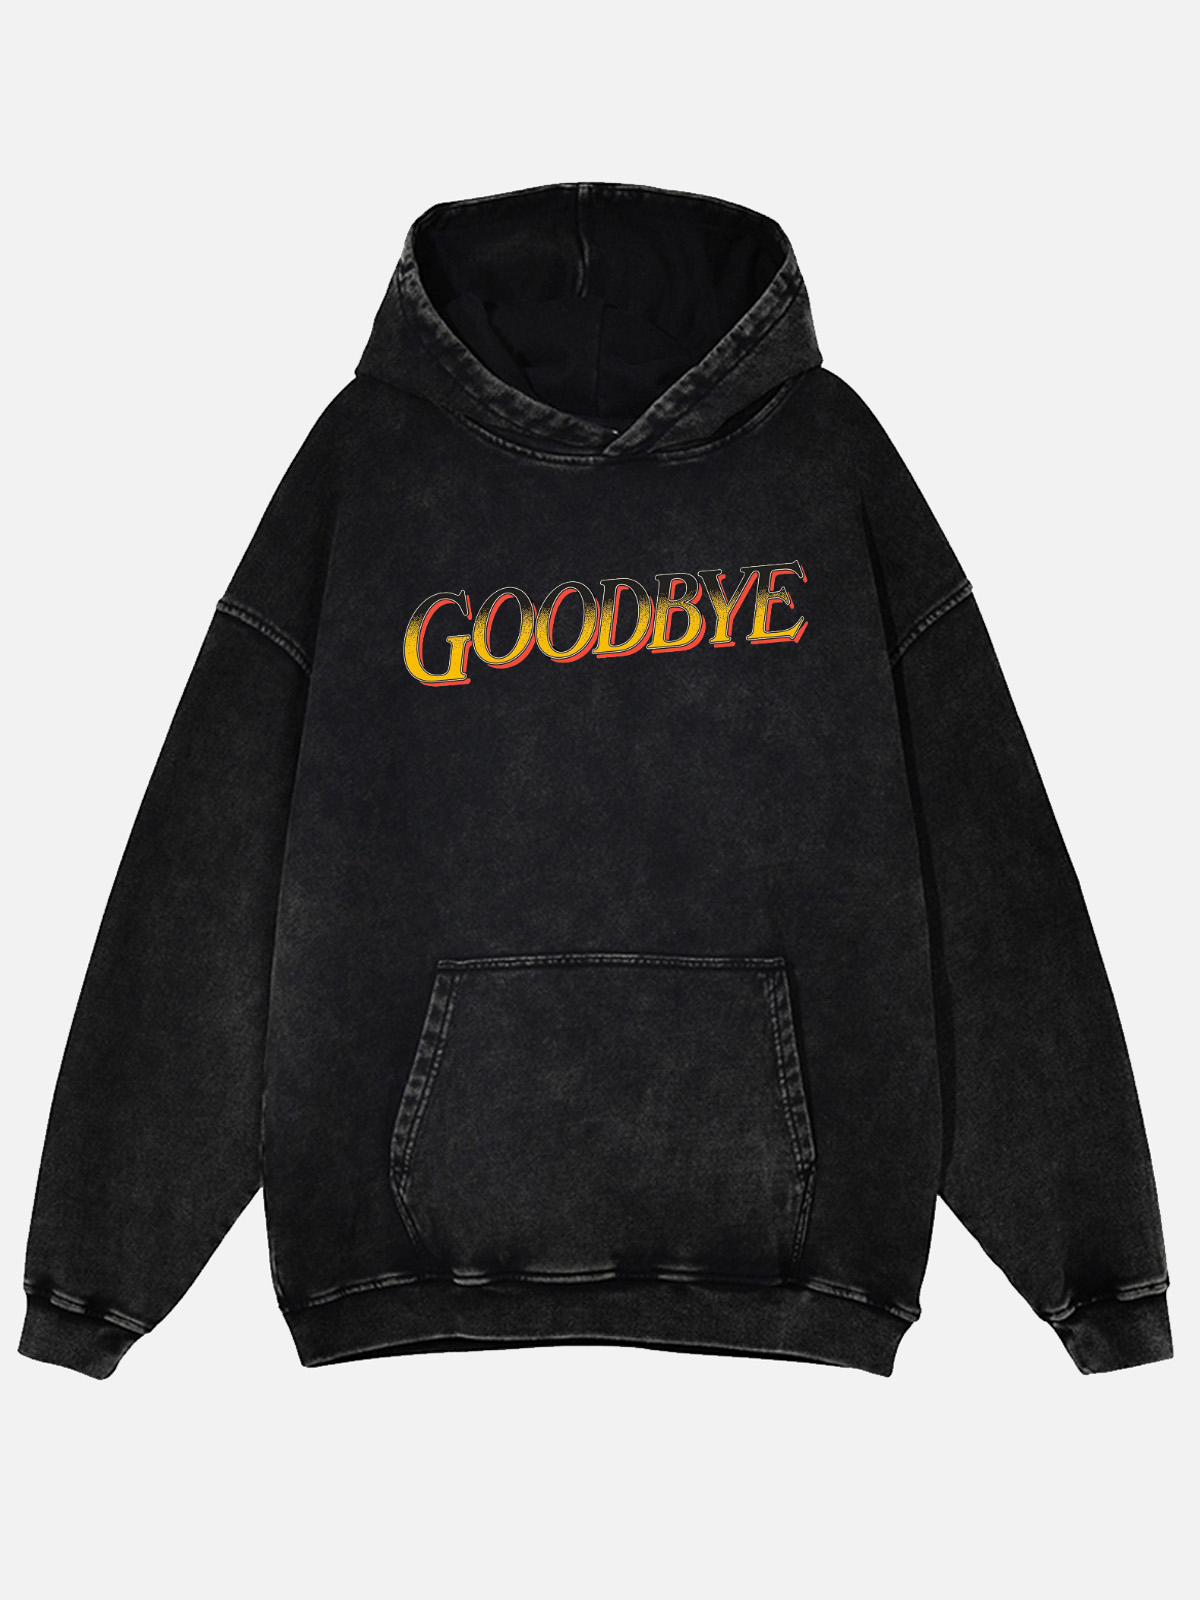 Goodbye Cruel World Unisex Wash Hooded Sweatshirt